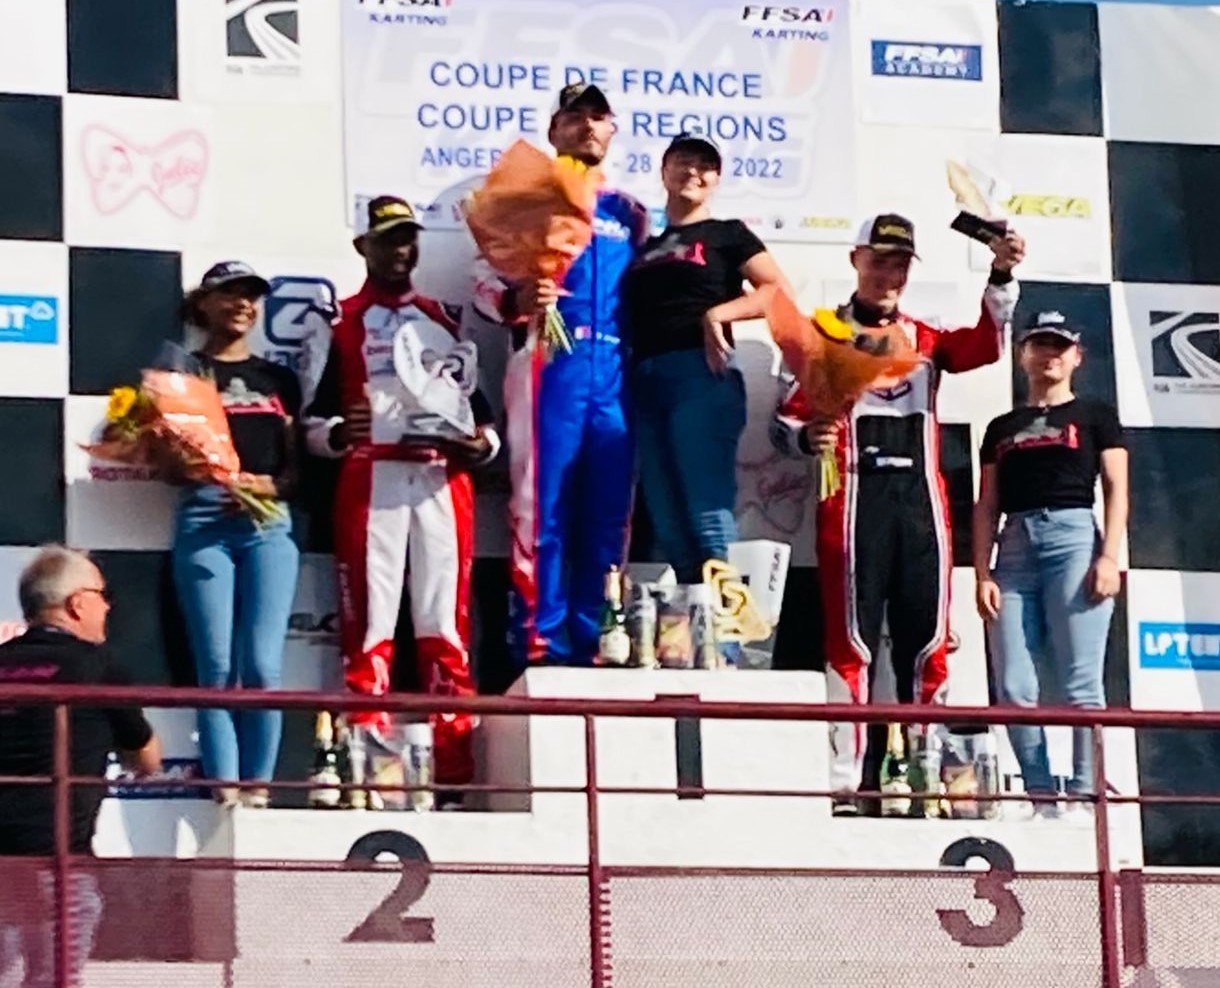     Le Martiniquais Craig Tanic finit 2e de la coupe de France de karting

